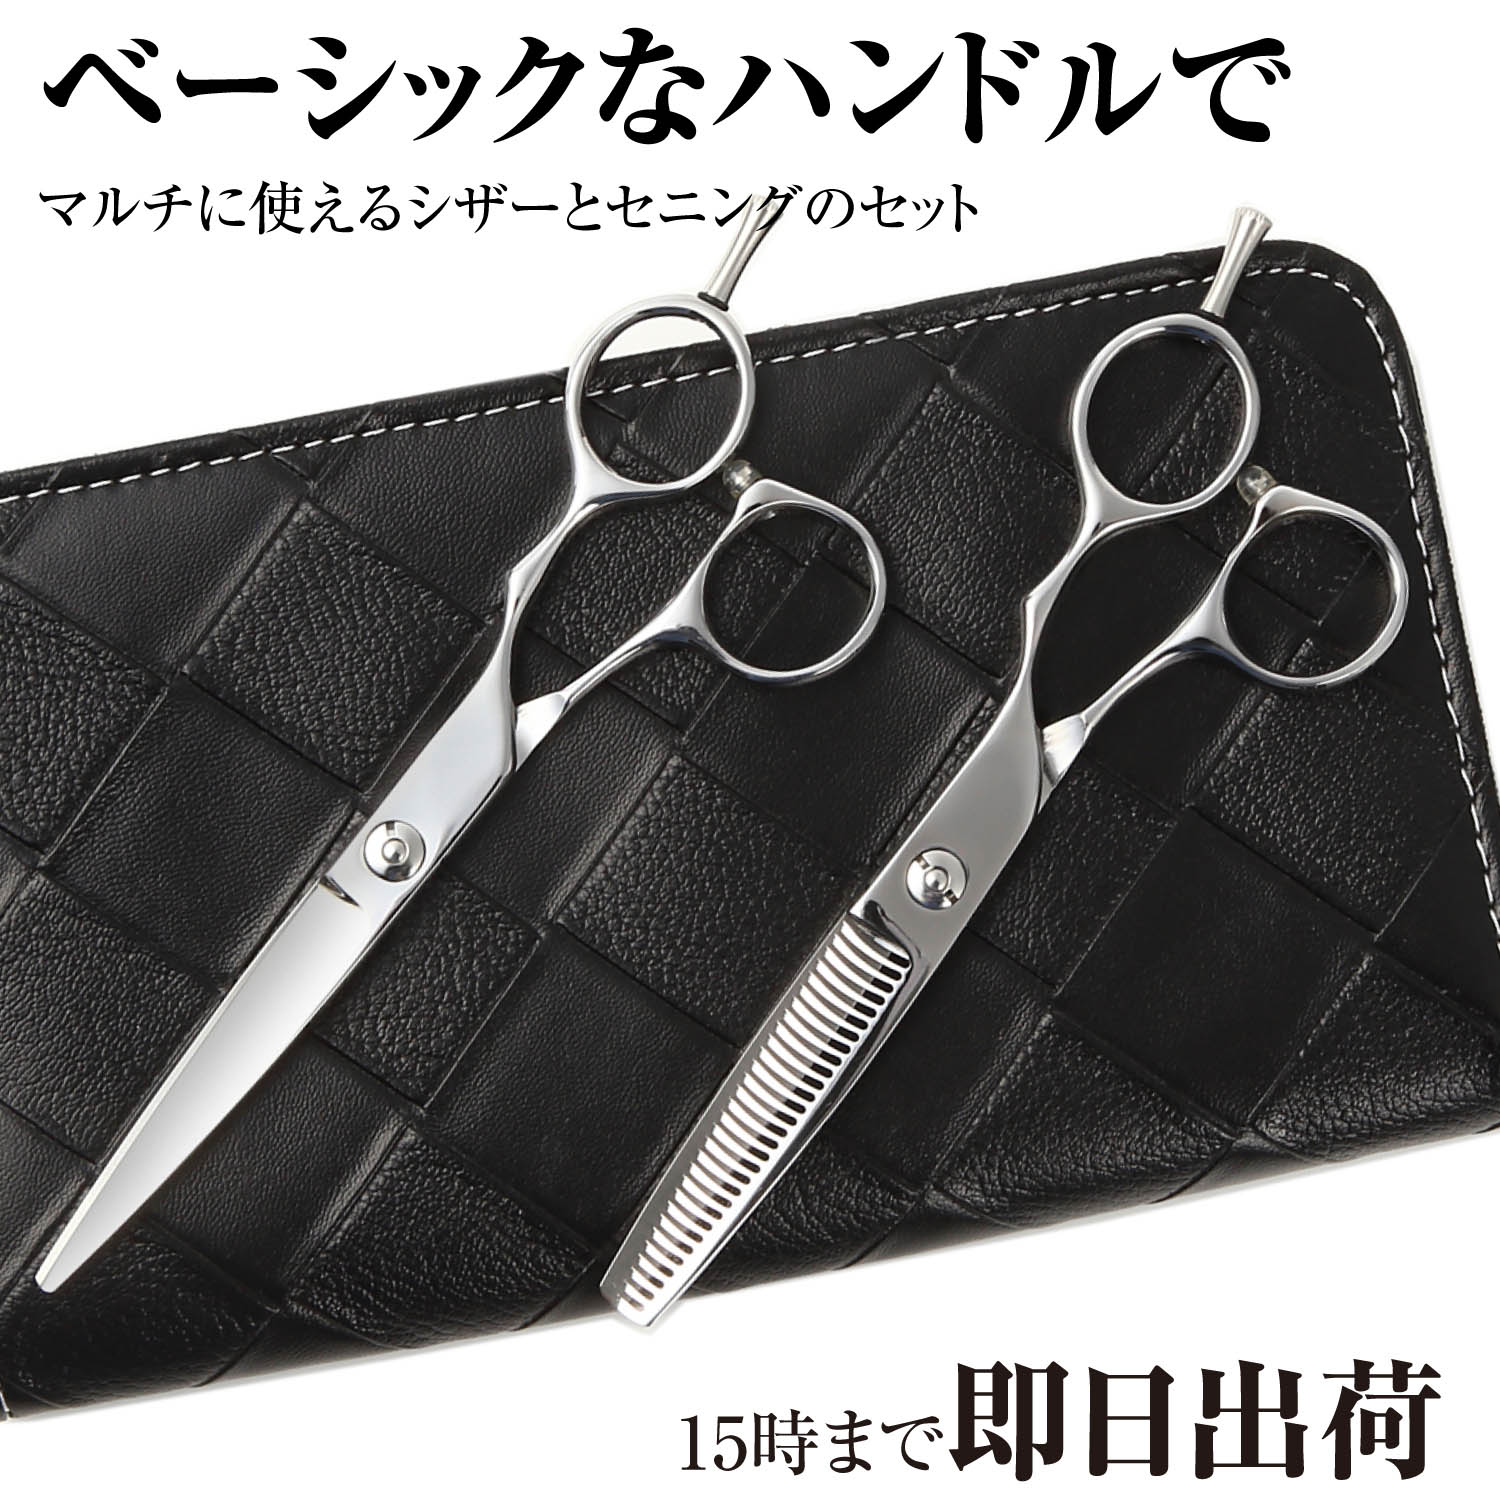 日本の鋏専門メーカー / 美容師専用 【PF】DEEDS GBZ シザー・セニング・専用ケース セット(5.5 6.0インチ) / 美容師…